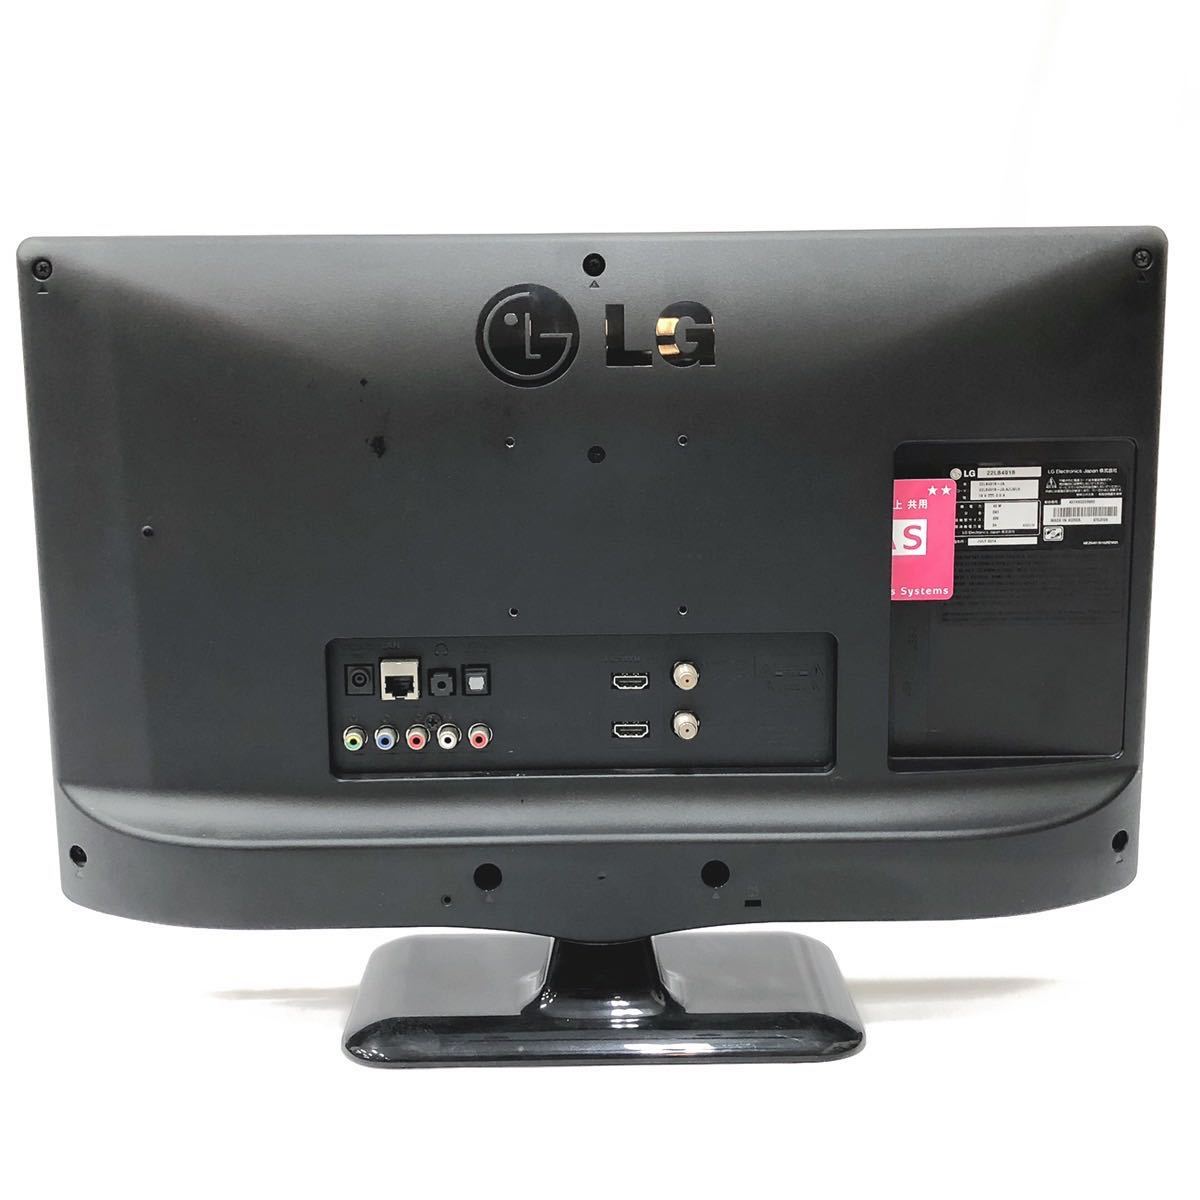 地デジ視聴OK LG 22V型 液晶テレビ 22LB491B 2014年製 リモコン B-CAS